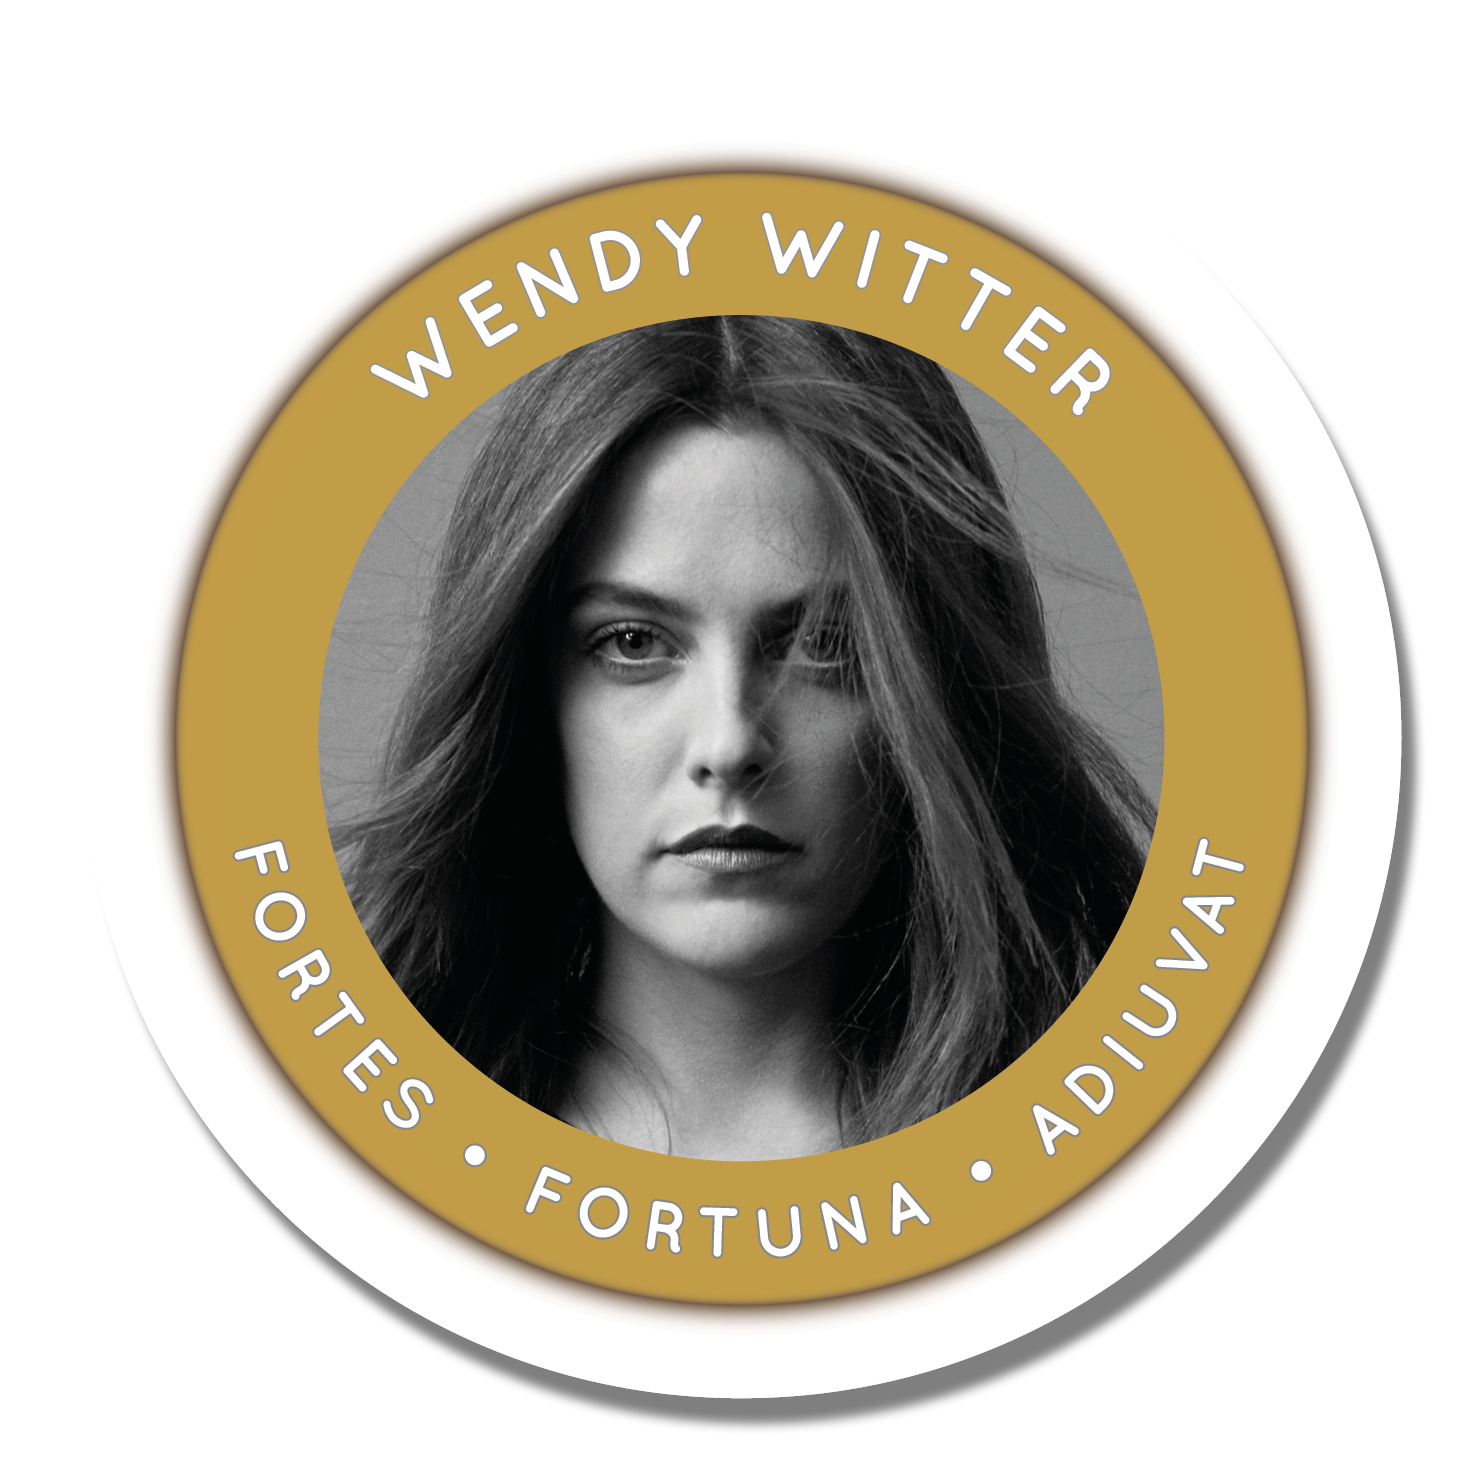 Voir un profil - Wendy Witter Hjyx